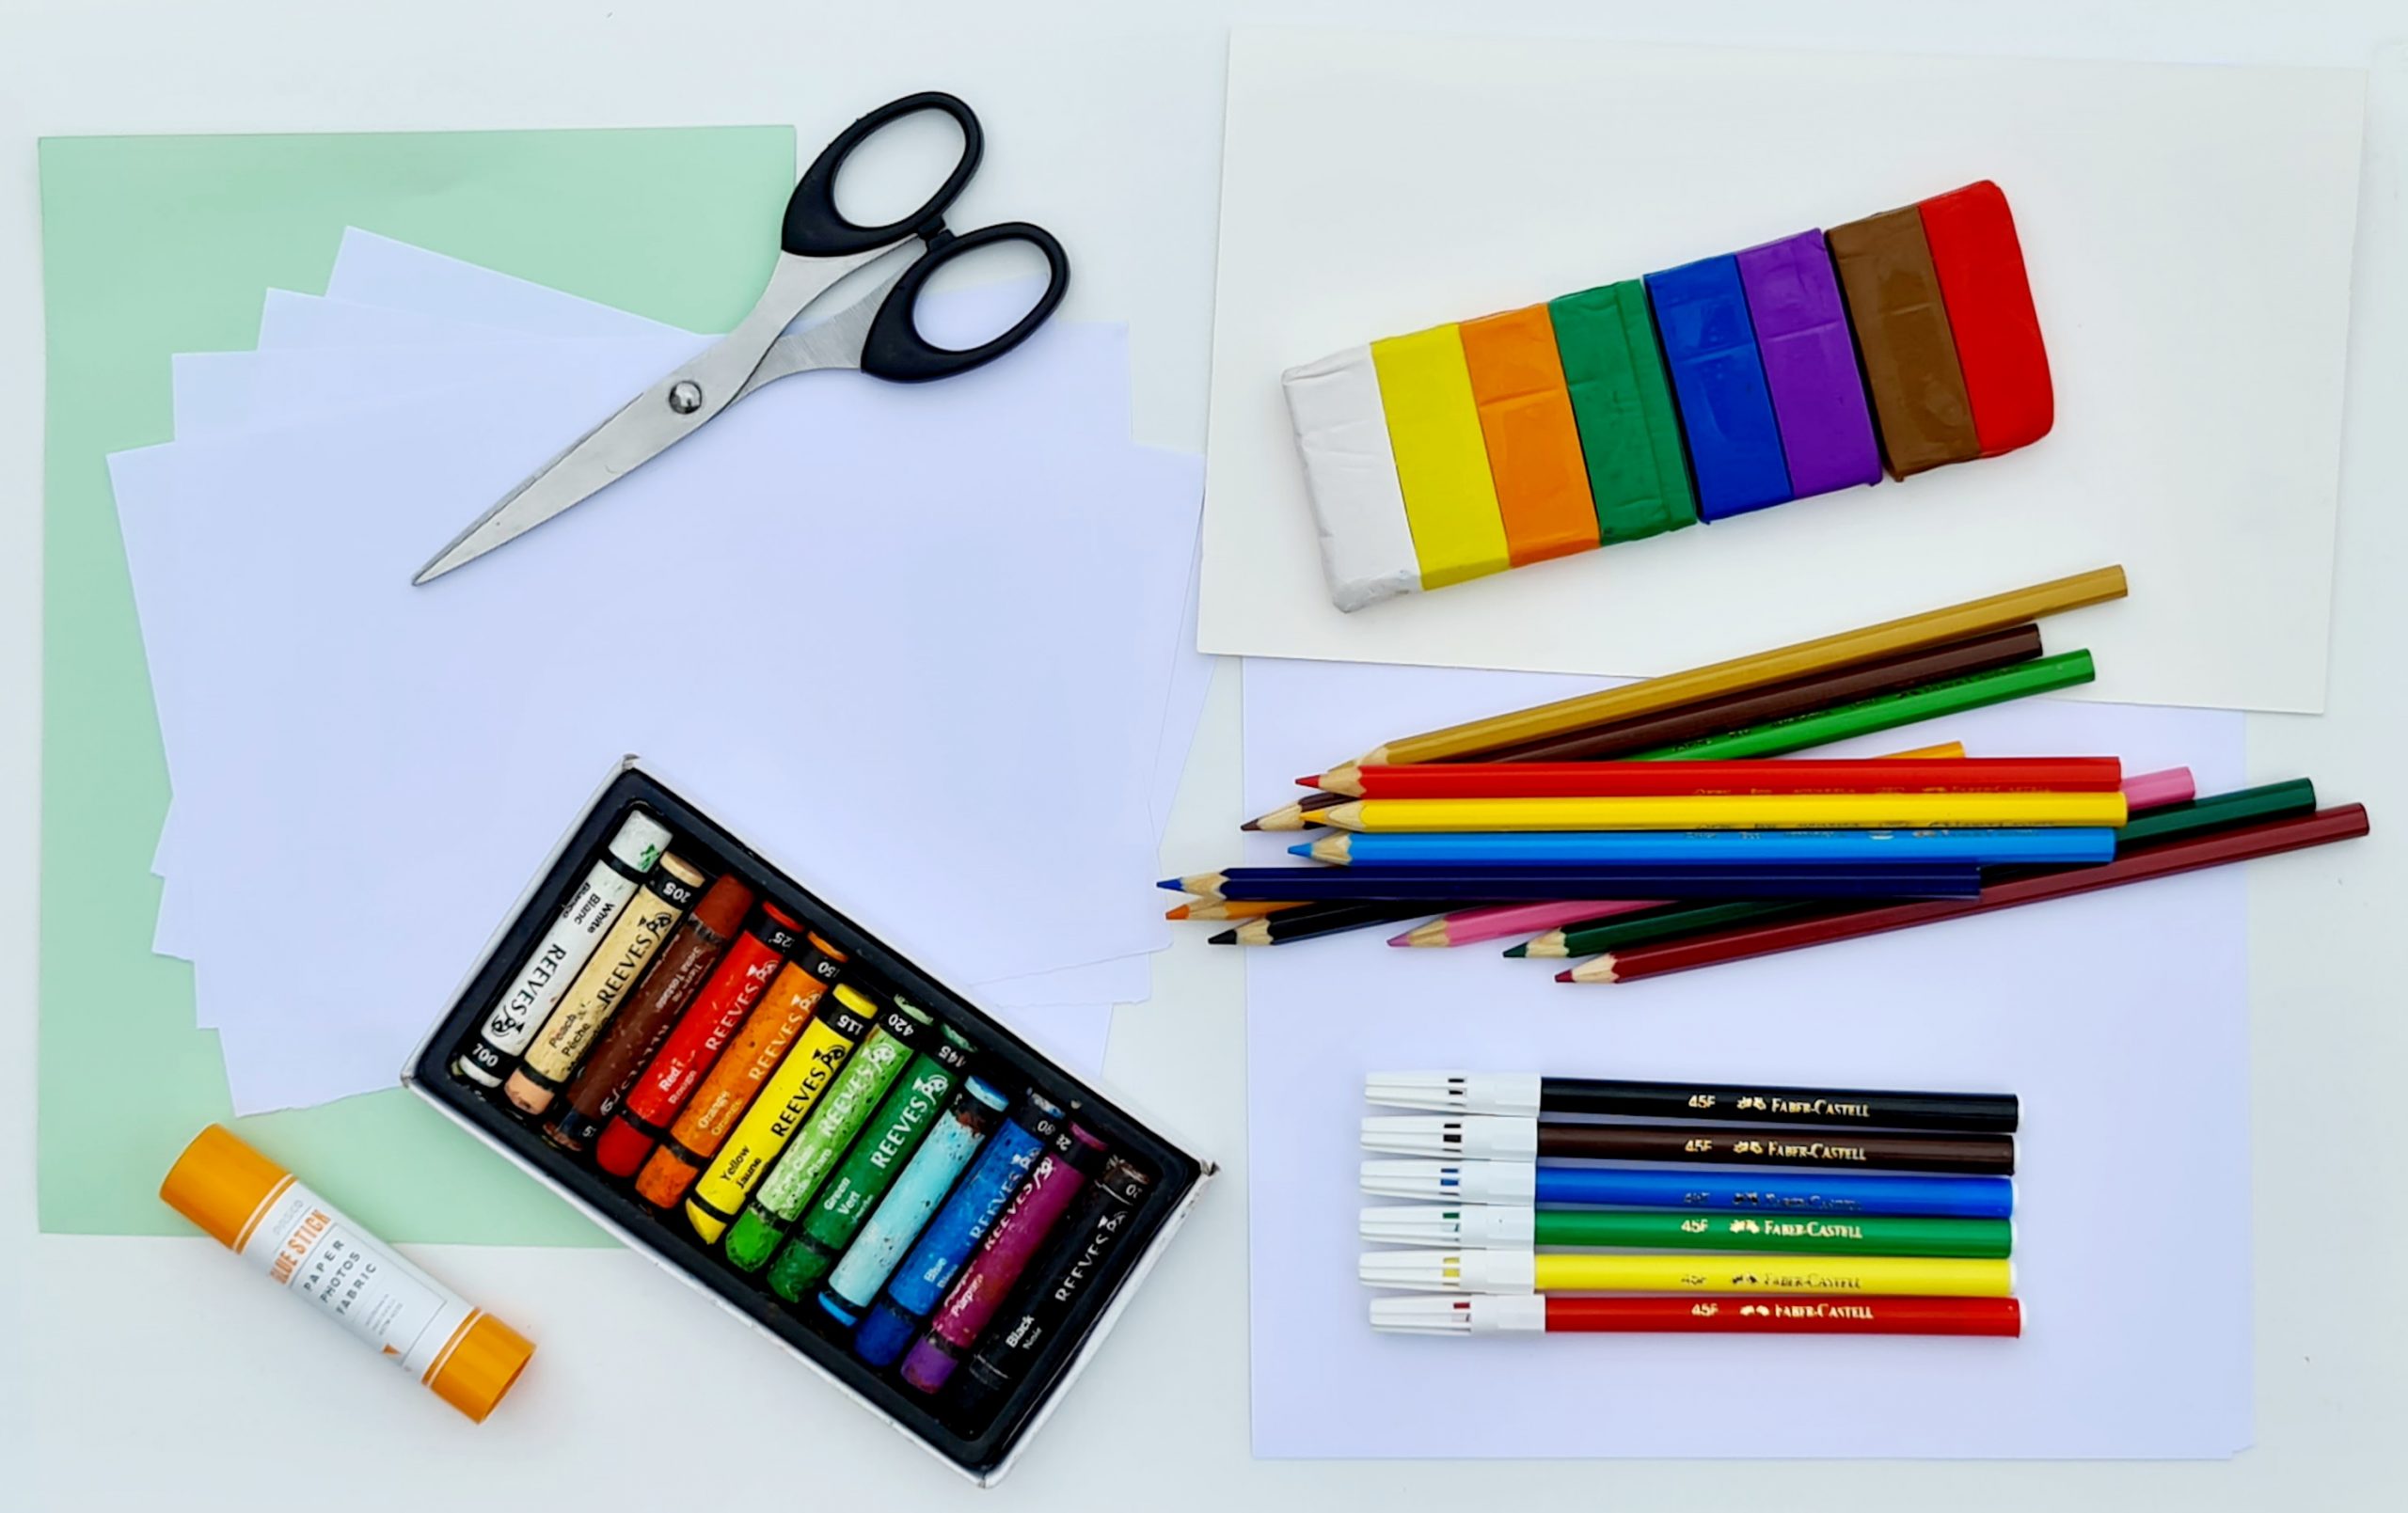 Dessiner avec des crayons de couleur Betzfar - une maison pour étudier la  peinture, la sculpture et le dessin Charkov